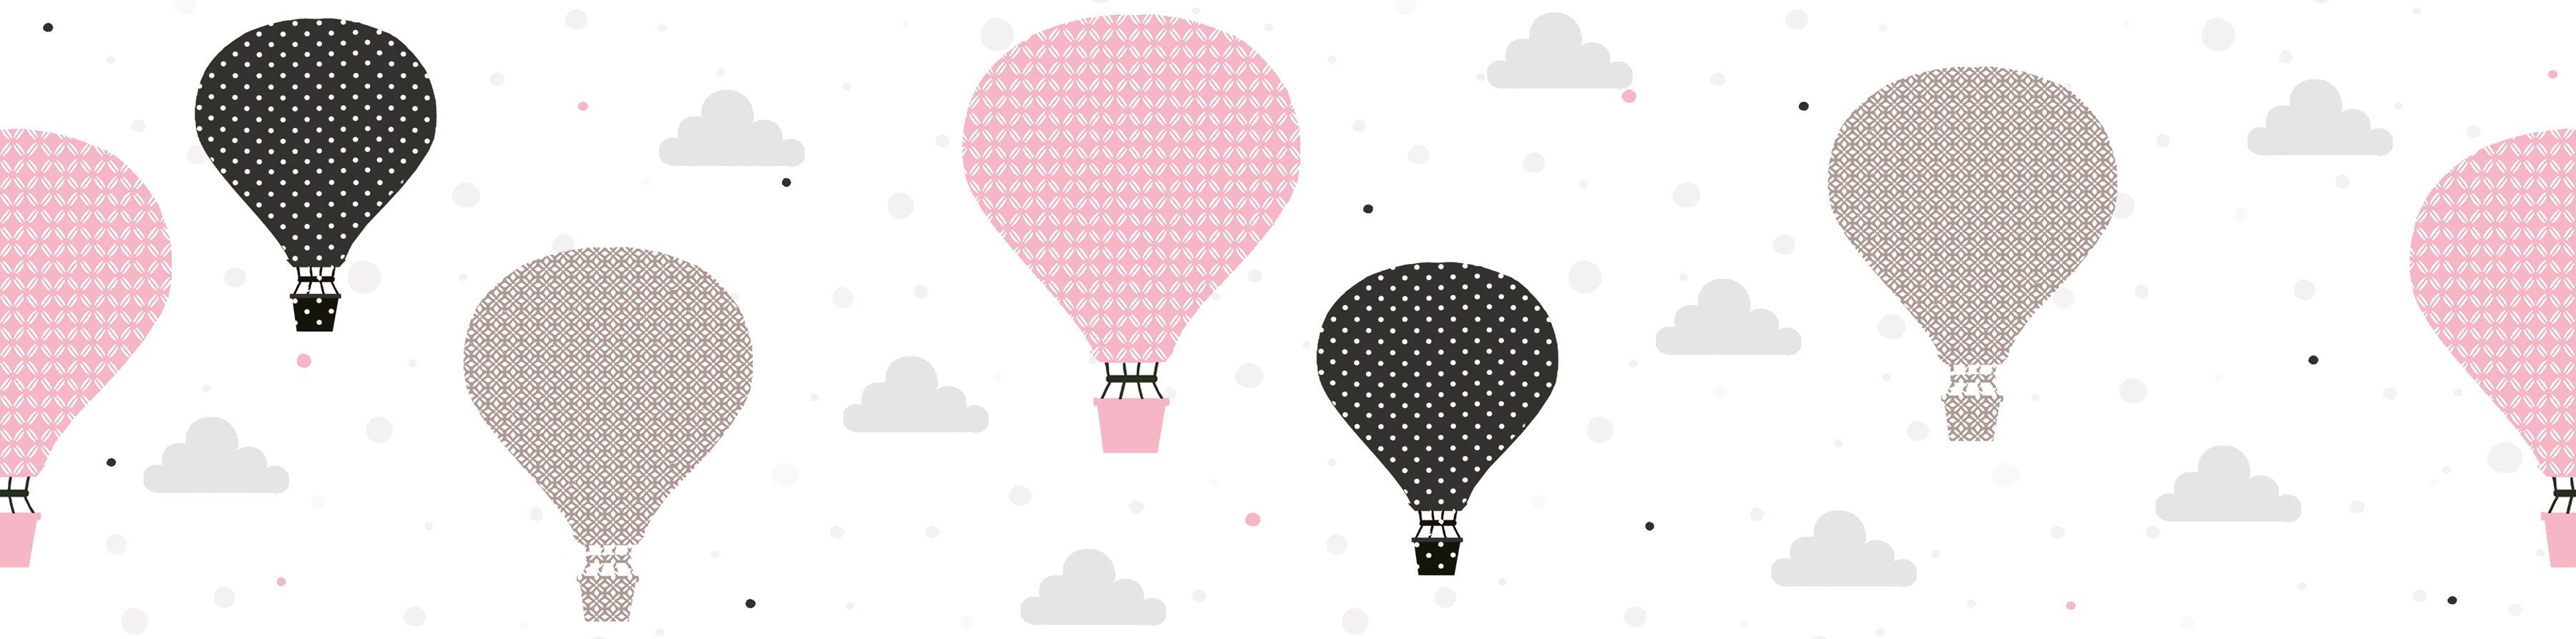 Tapete Schwarz Balloons, Rosa A.S. Bordüre Kinderzimmer glatt, Grau Heißluftballon Création Bordüre Cloud